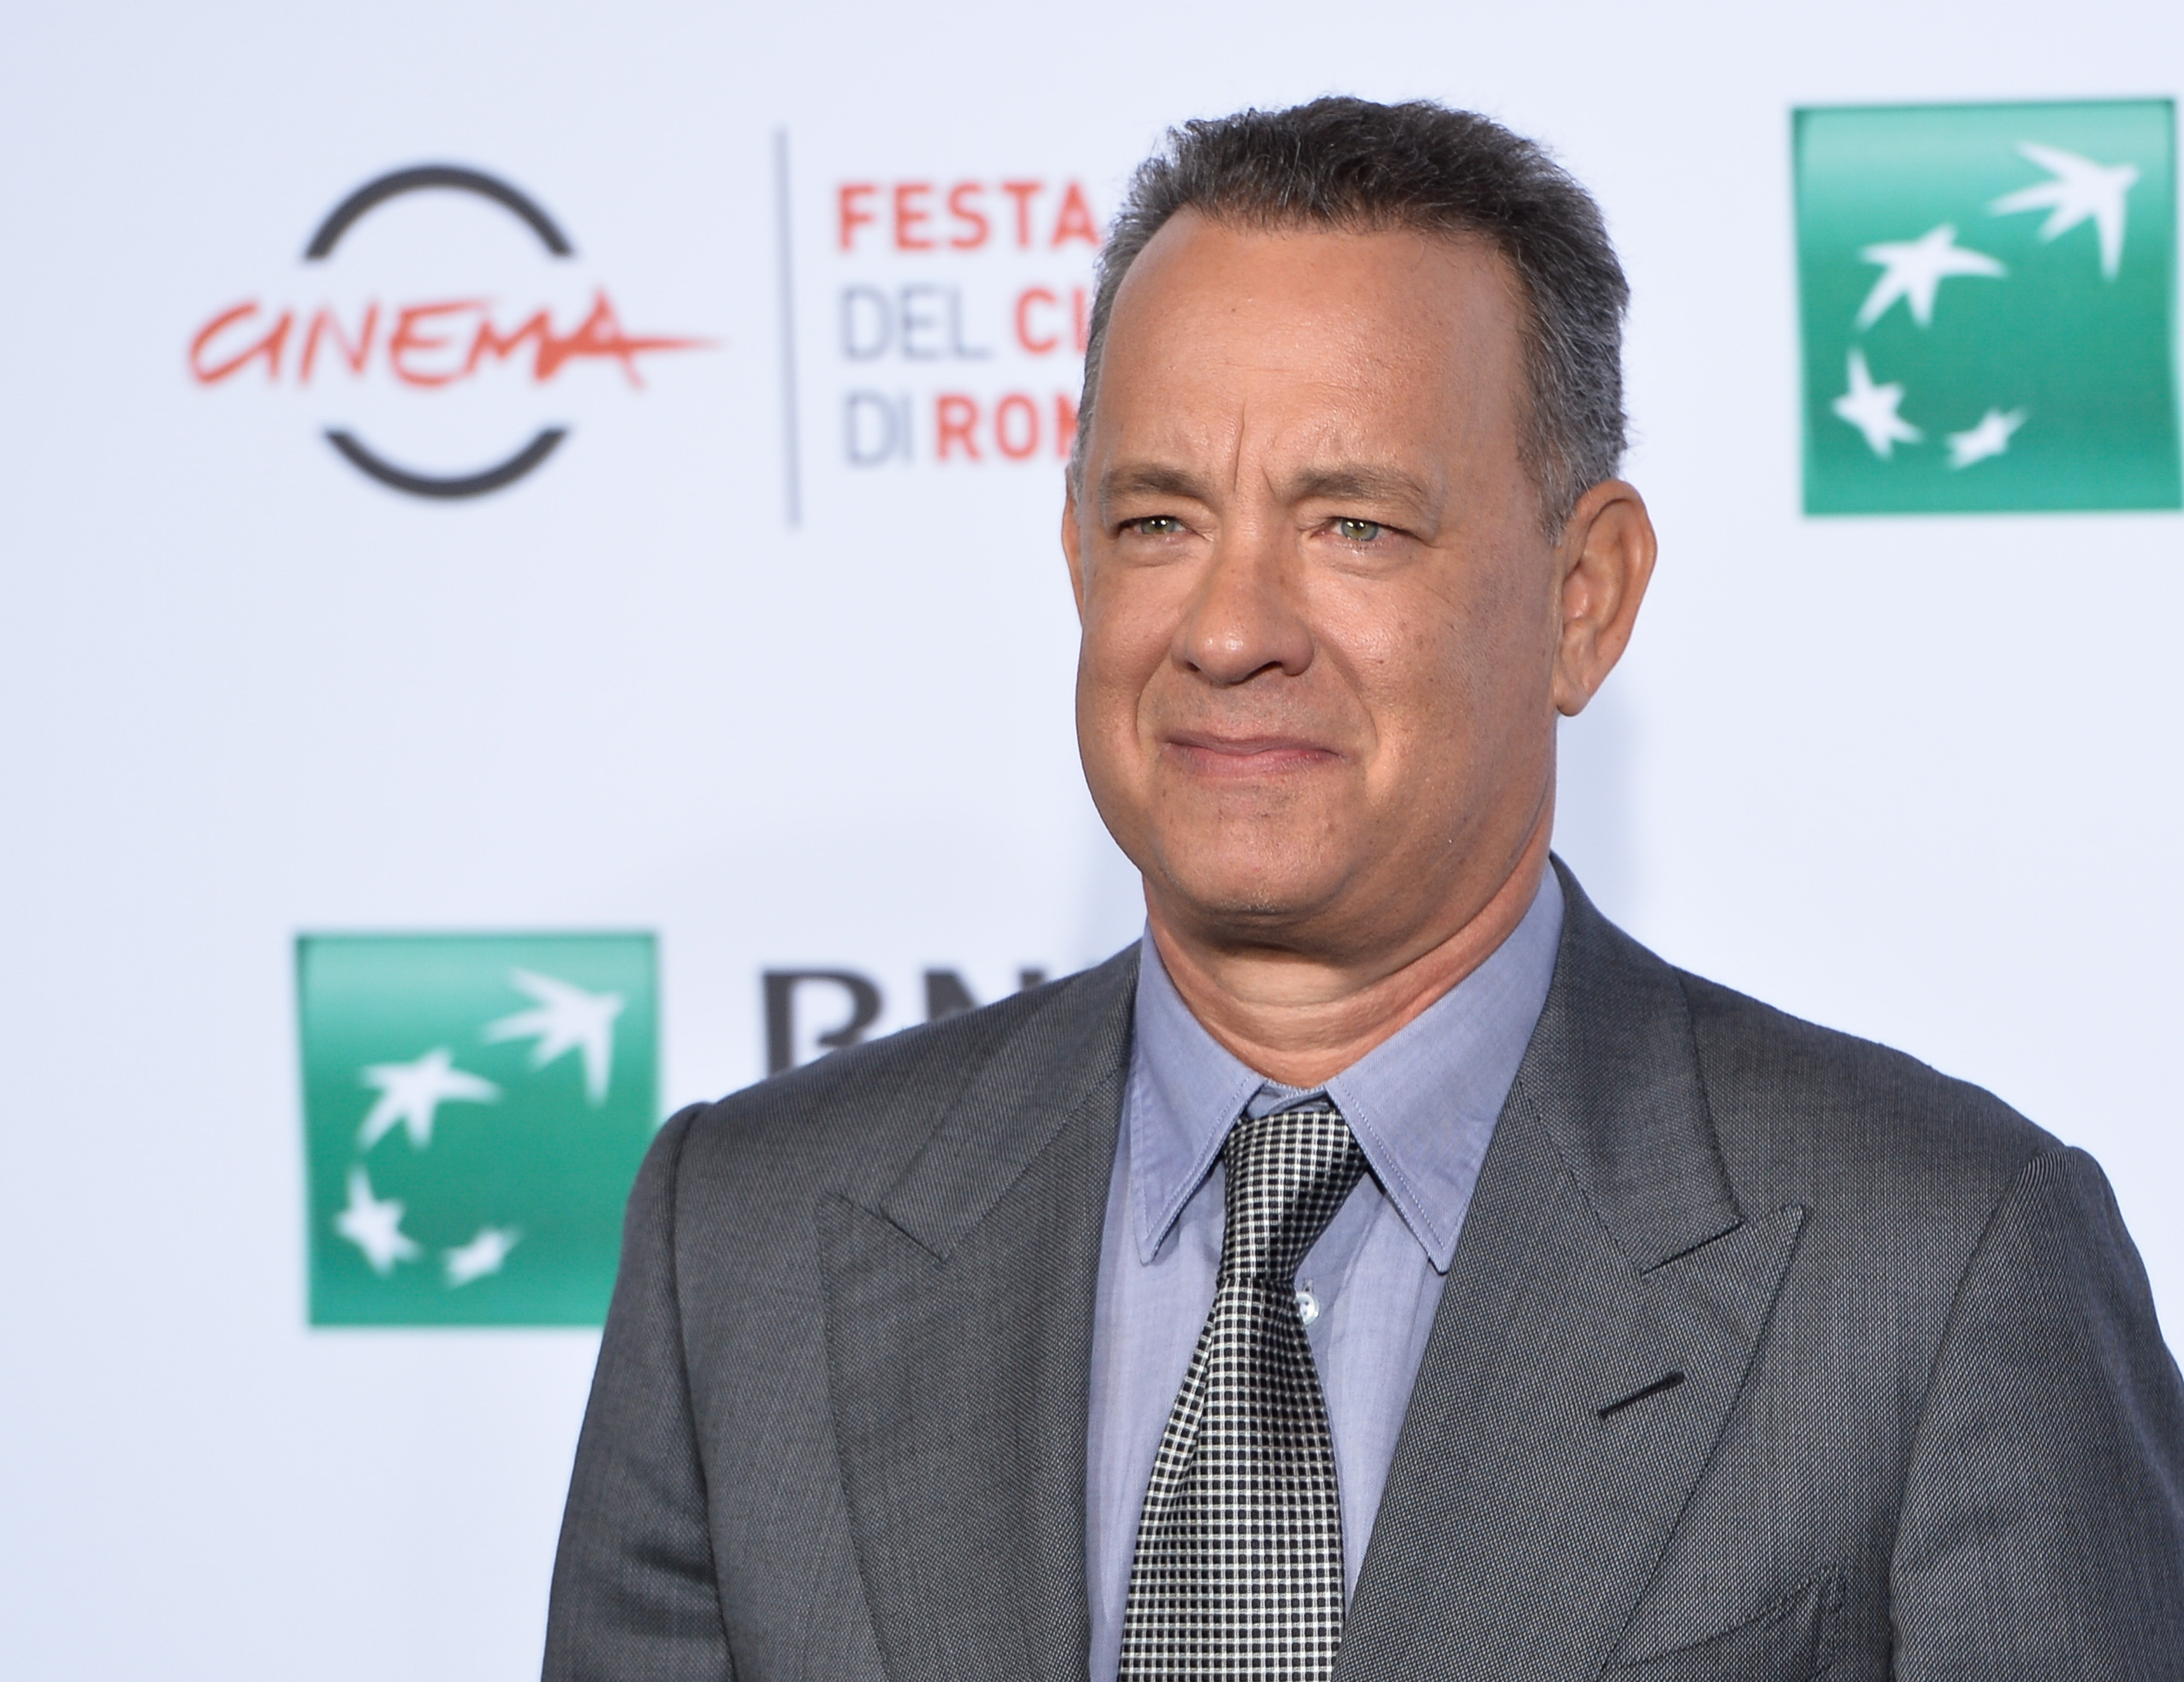 Tom Hanks kávéfőzőt küldött a Fehér Házban dolgozó újságíróknak, hogy bírják a küzdelmet az igazságért